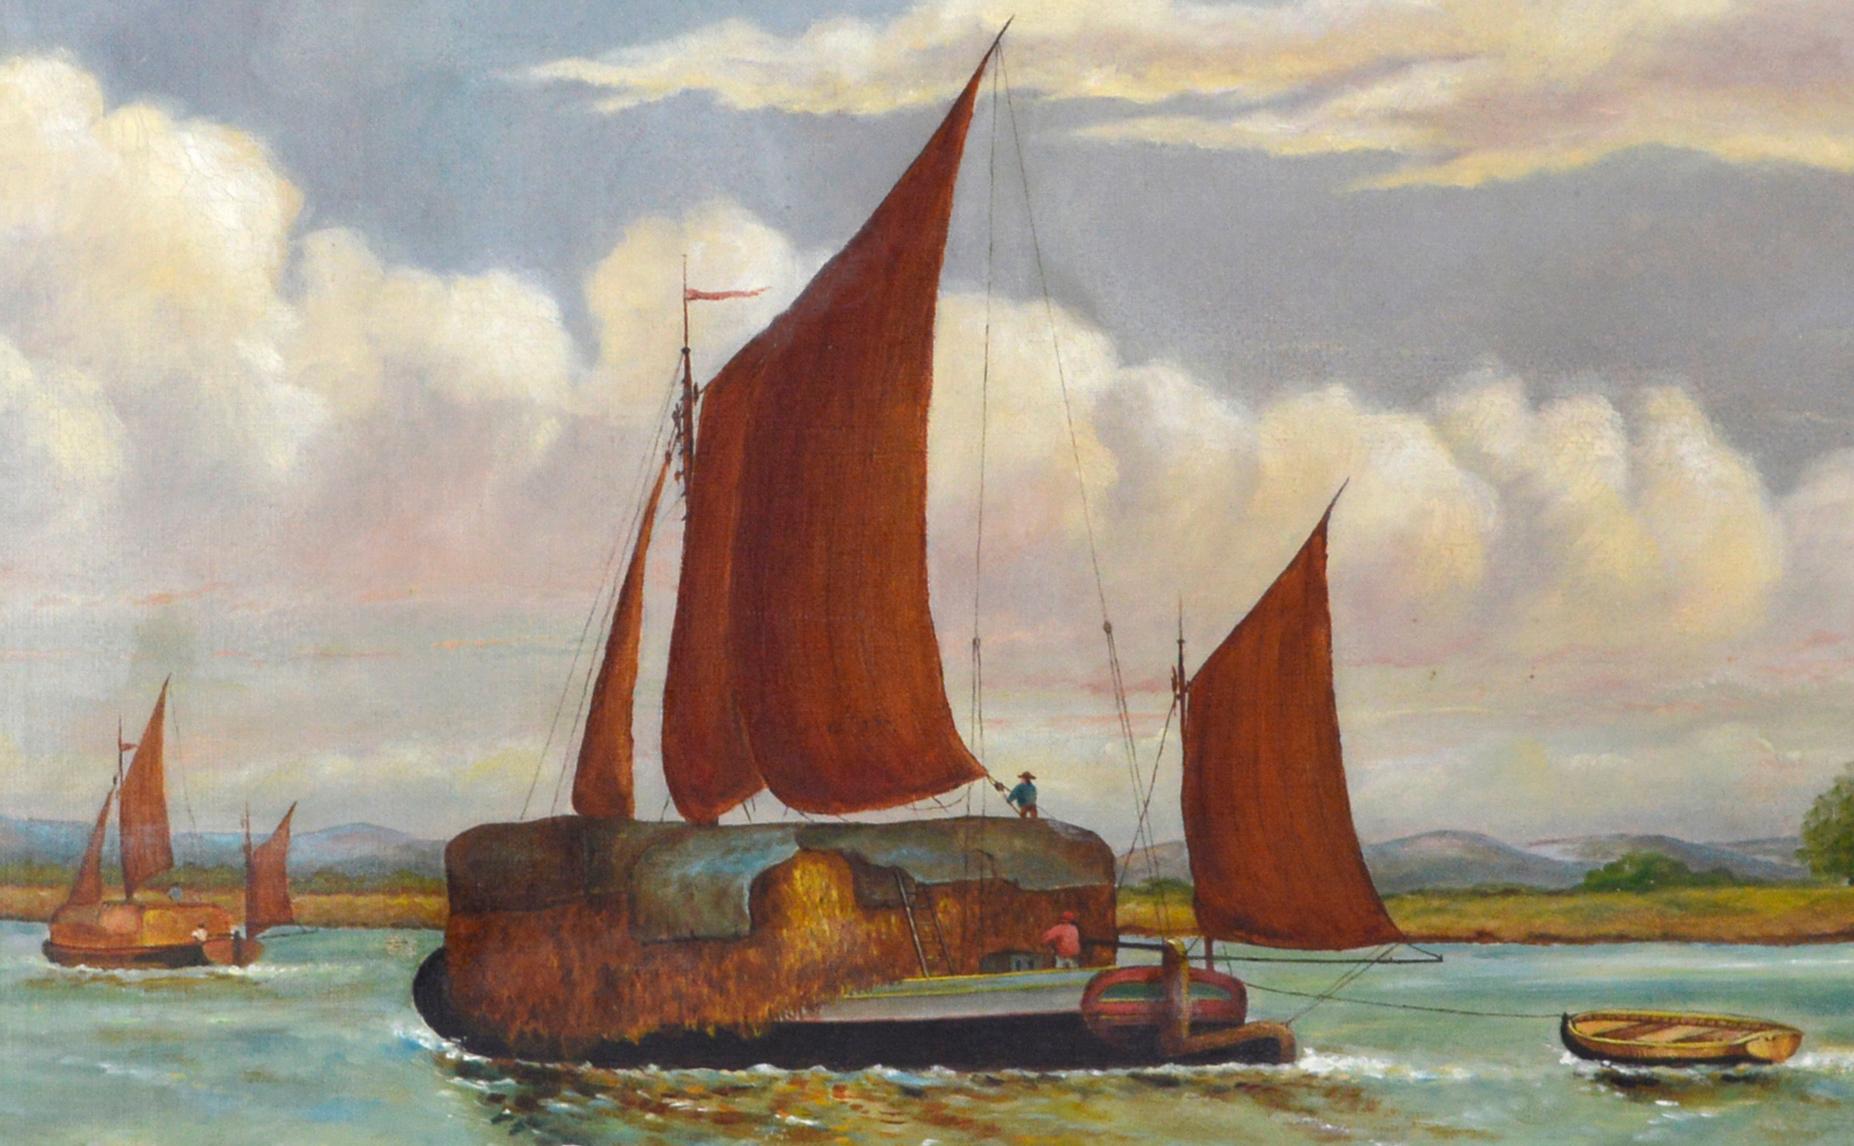 Edward Duncan, Öl auf Leinen, 1898, „Straw Barge“ an der Thames (nach) (Impressionismus), Painting, von Richard Hayley Lever